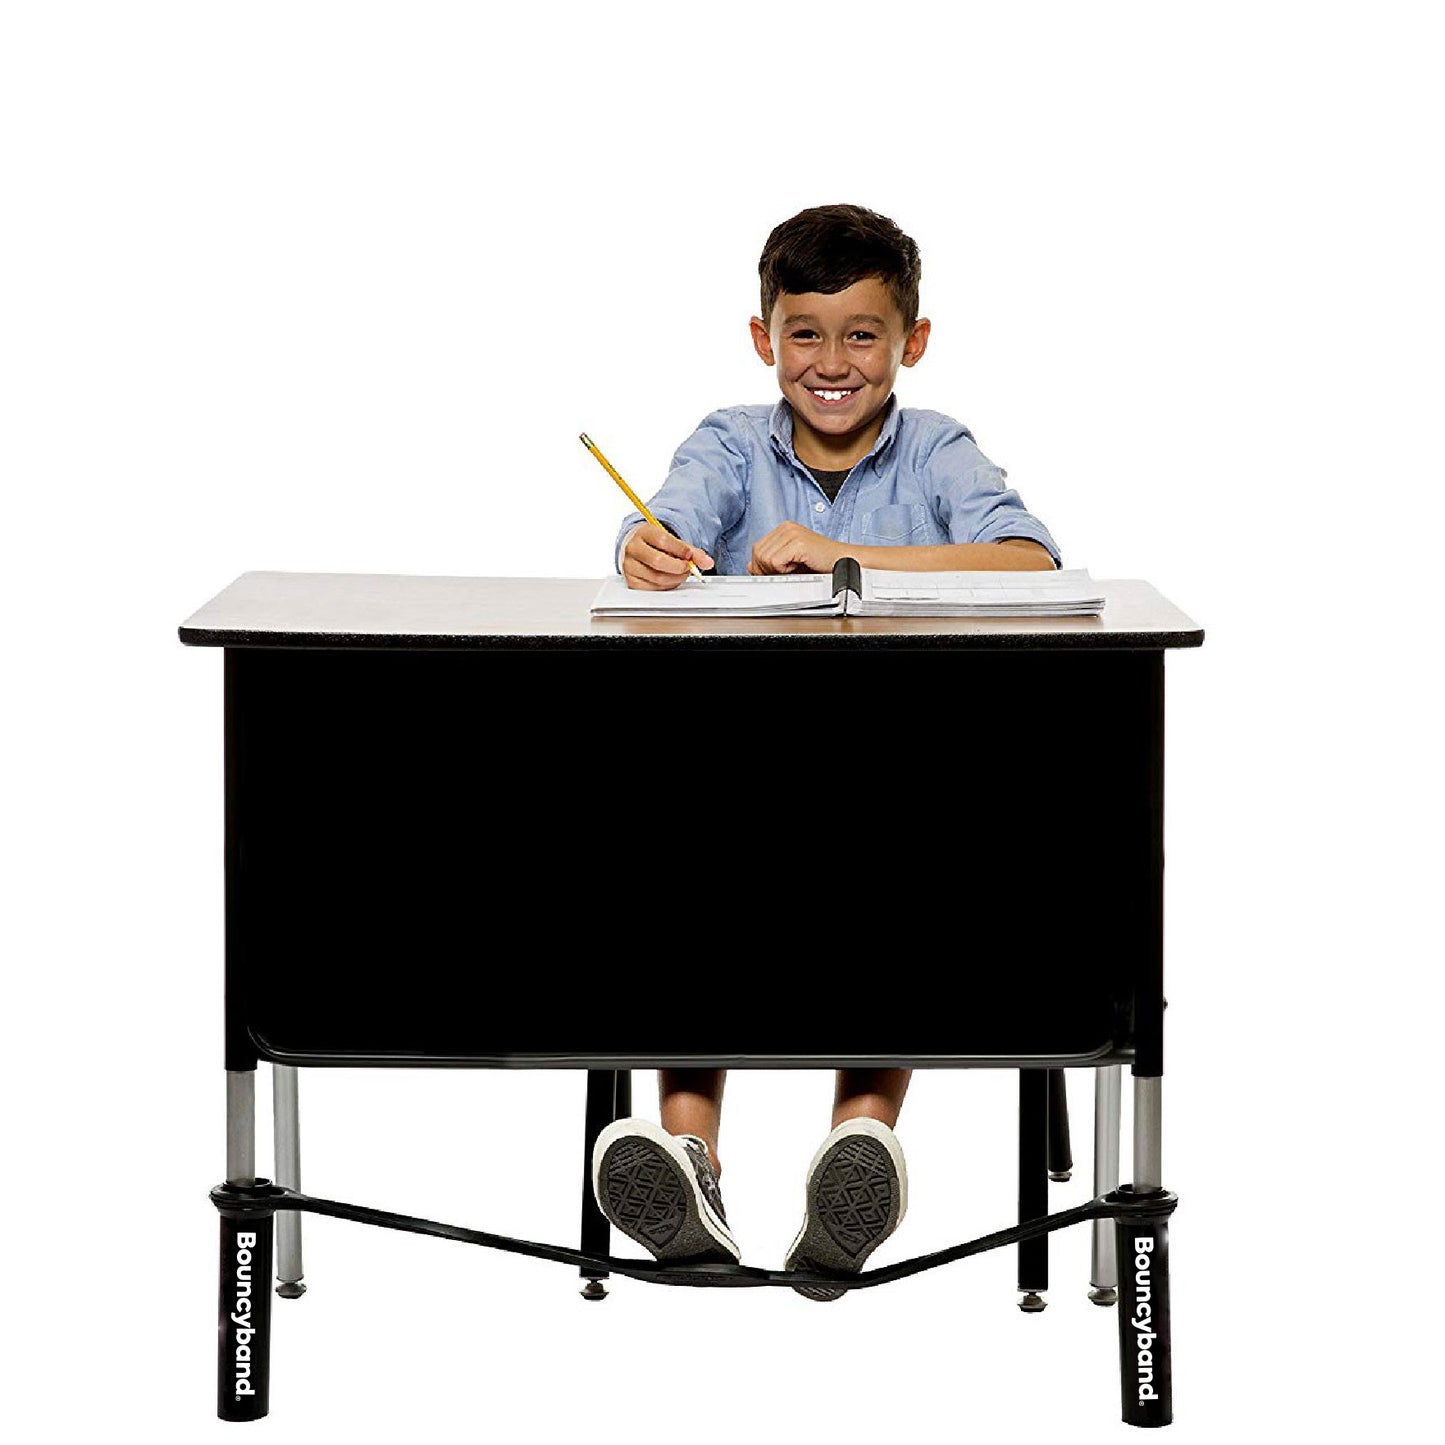 Black Tubes for Extra-Wide School Desks